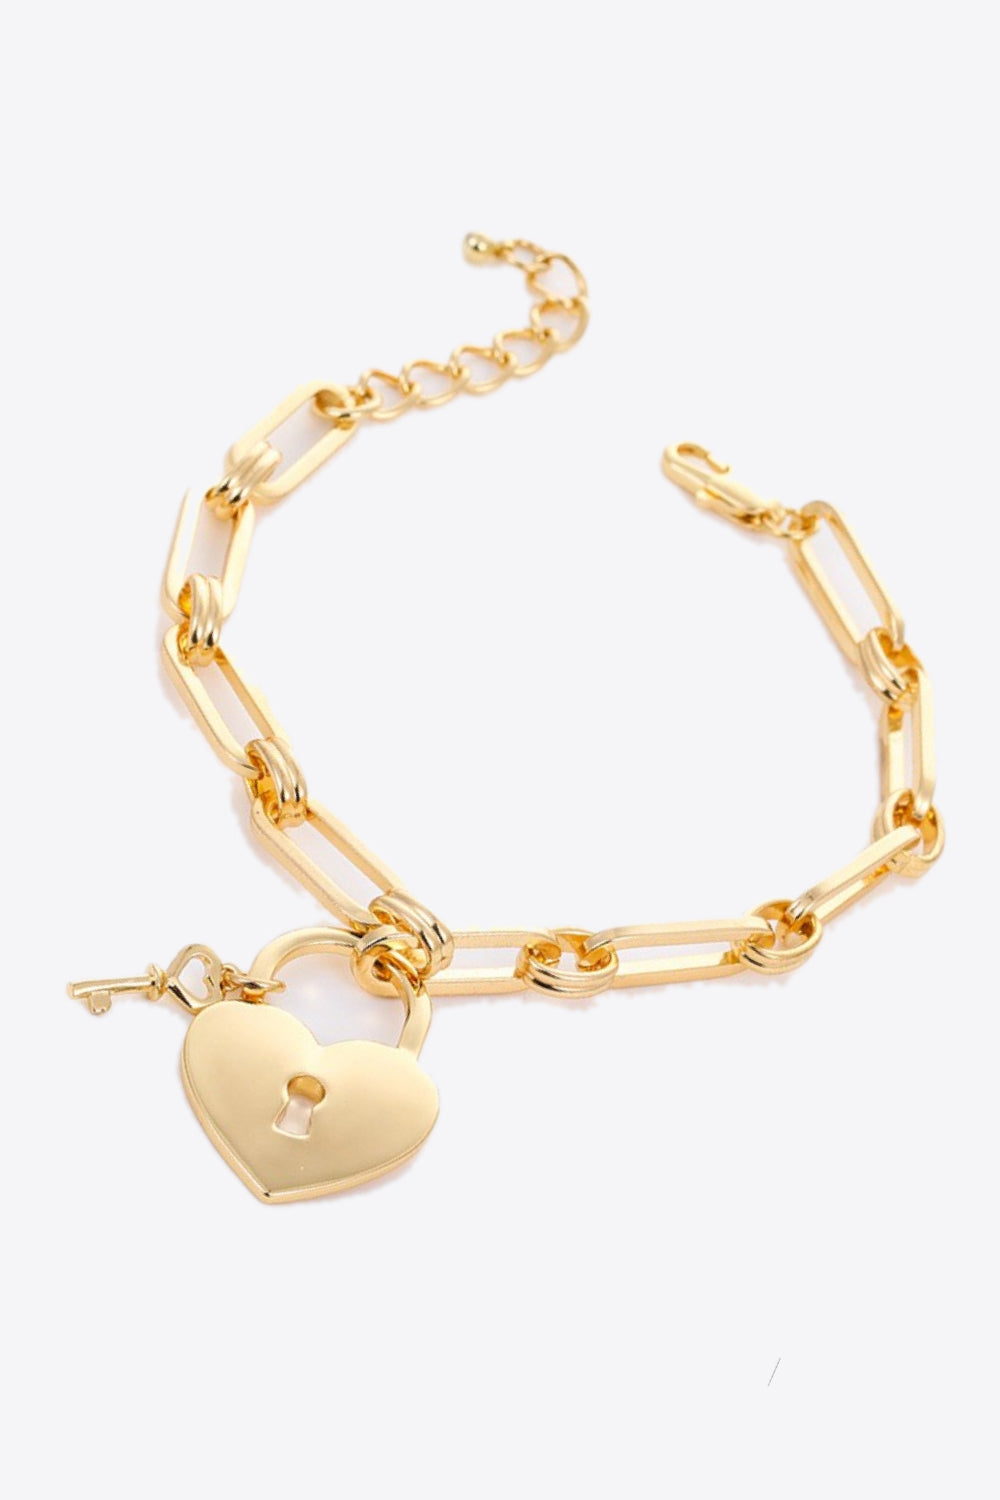 Heart Lock Charm Chain Bracelet - Gold / One Size - Women’s Jewelry - Bracelets - 2 - 2024